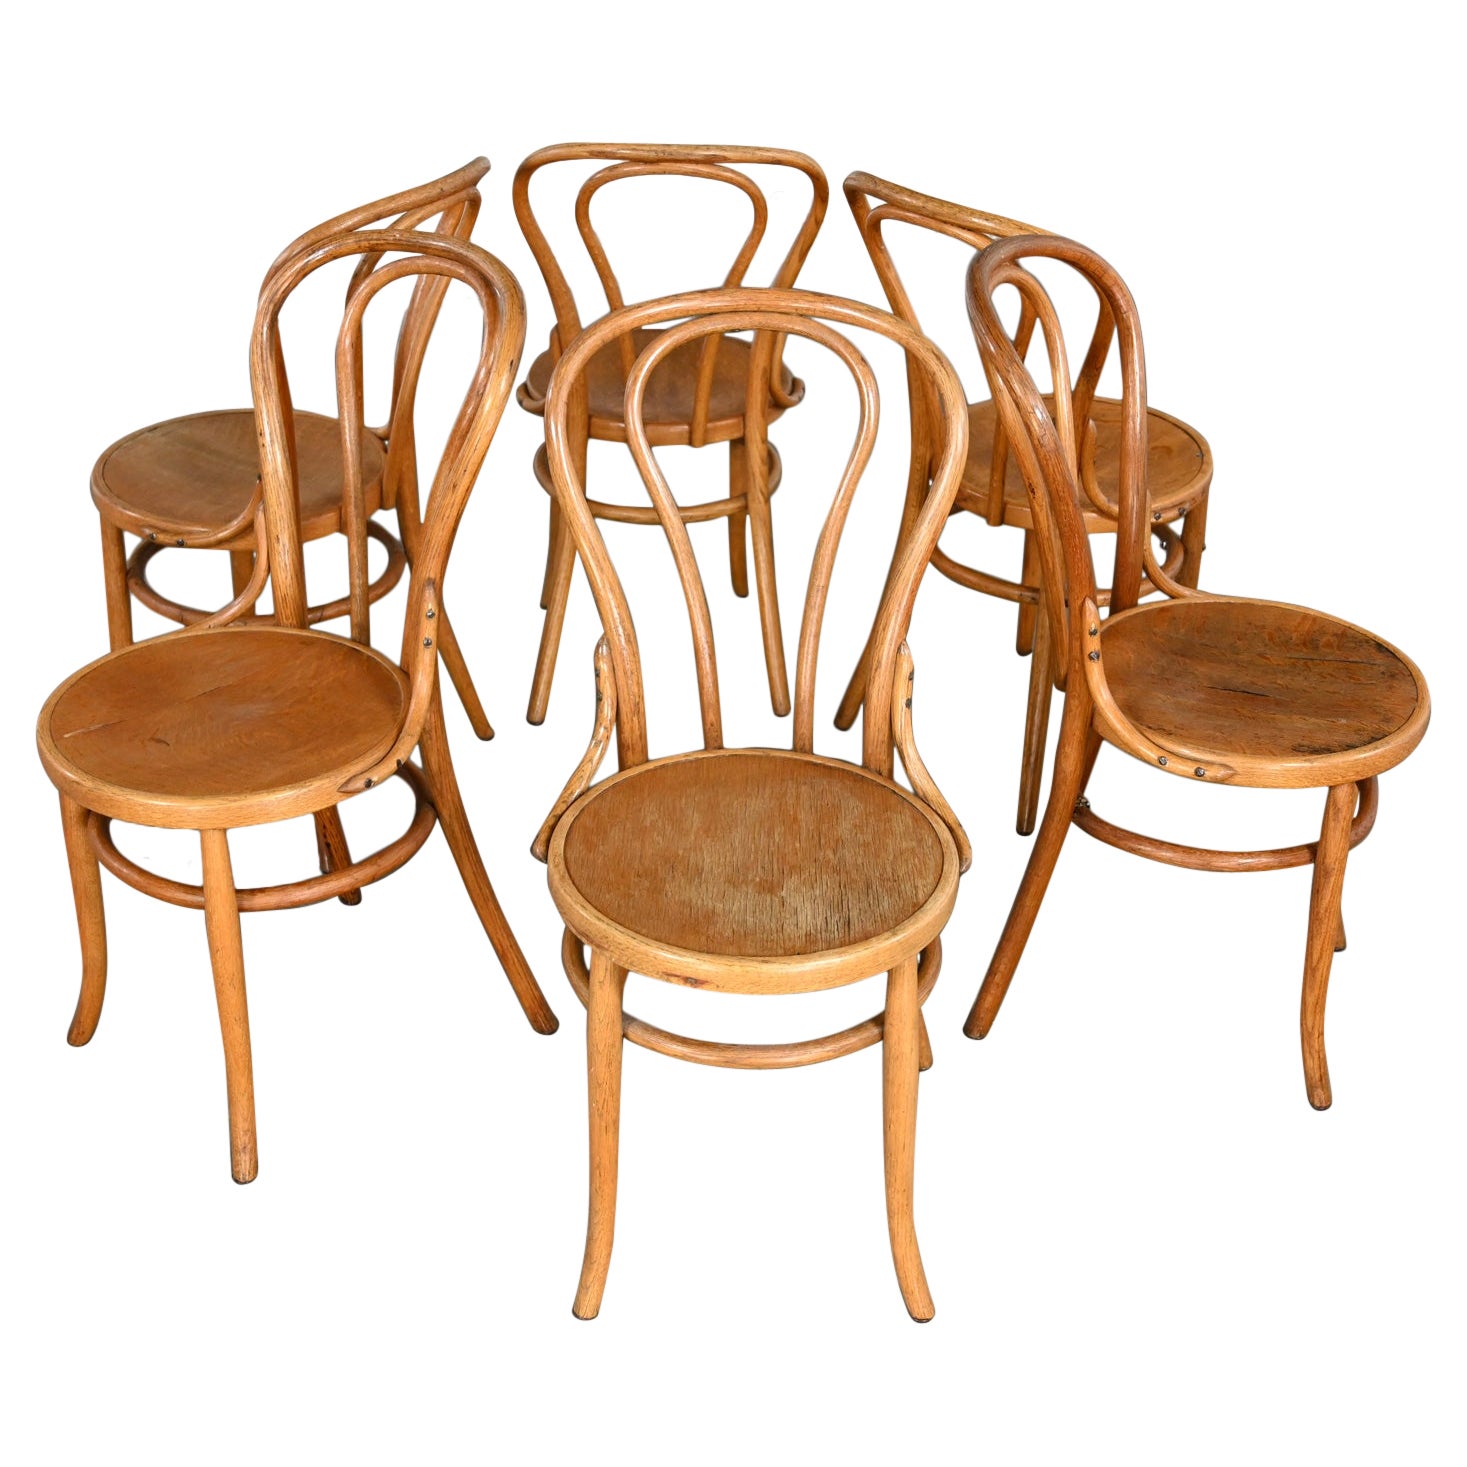 Chaises Bauhaus en chêne bentwood attribuées à Thonet #18 Café Chair Set of 6